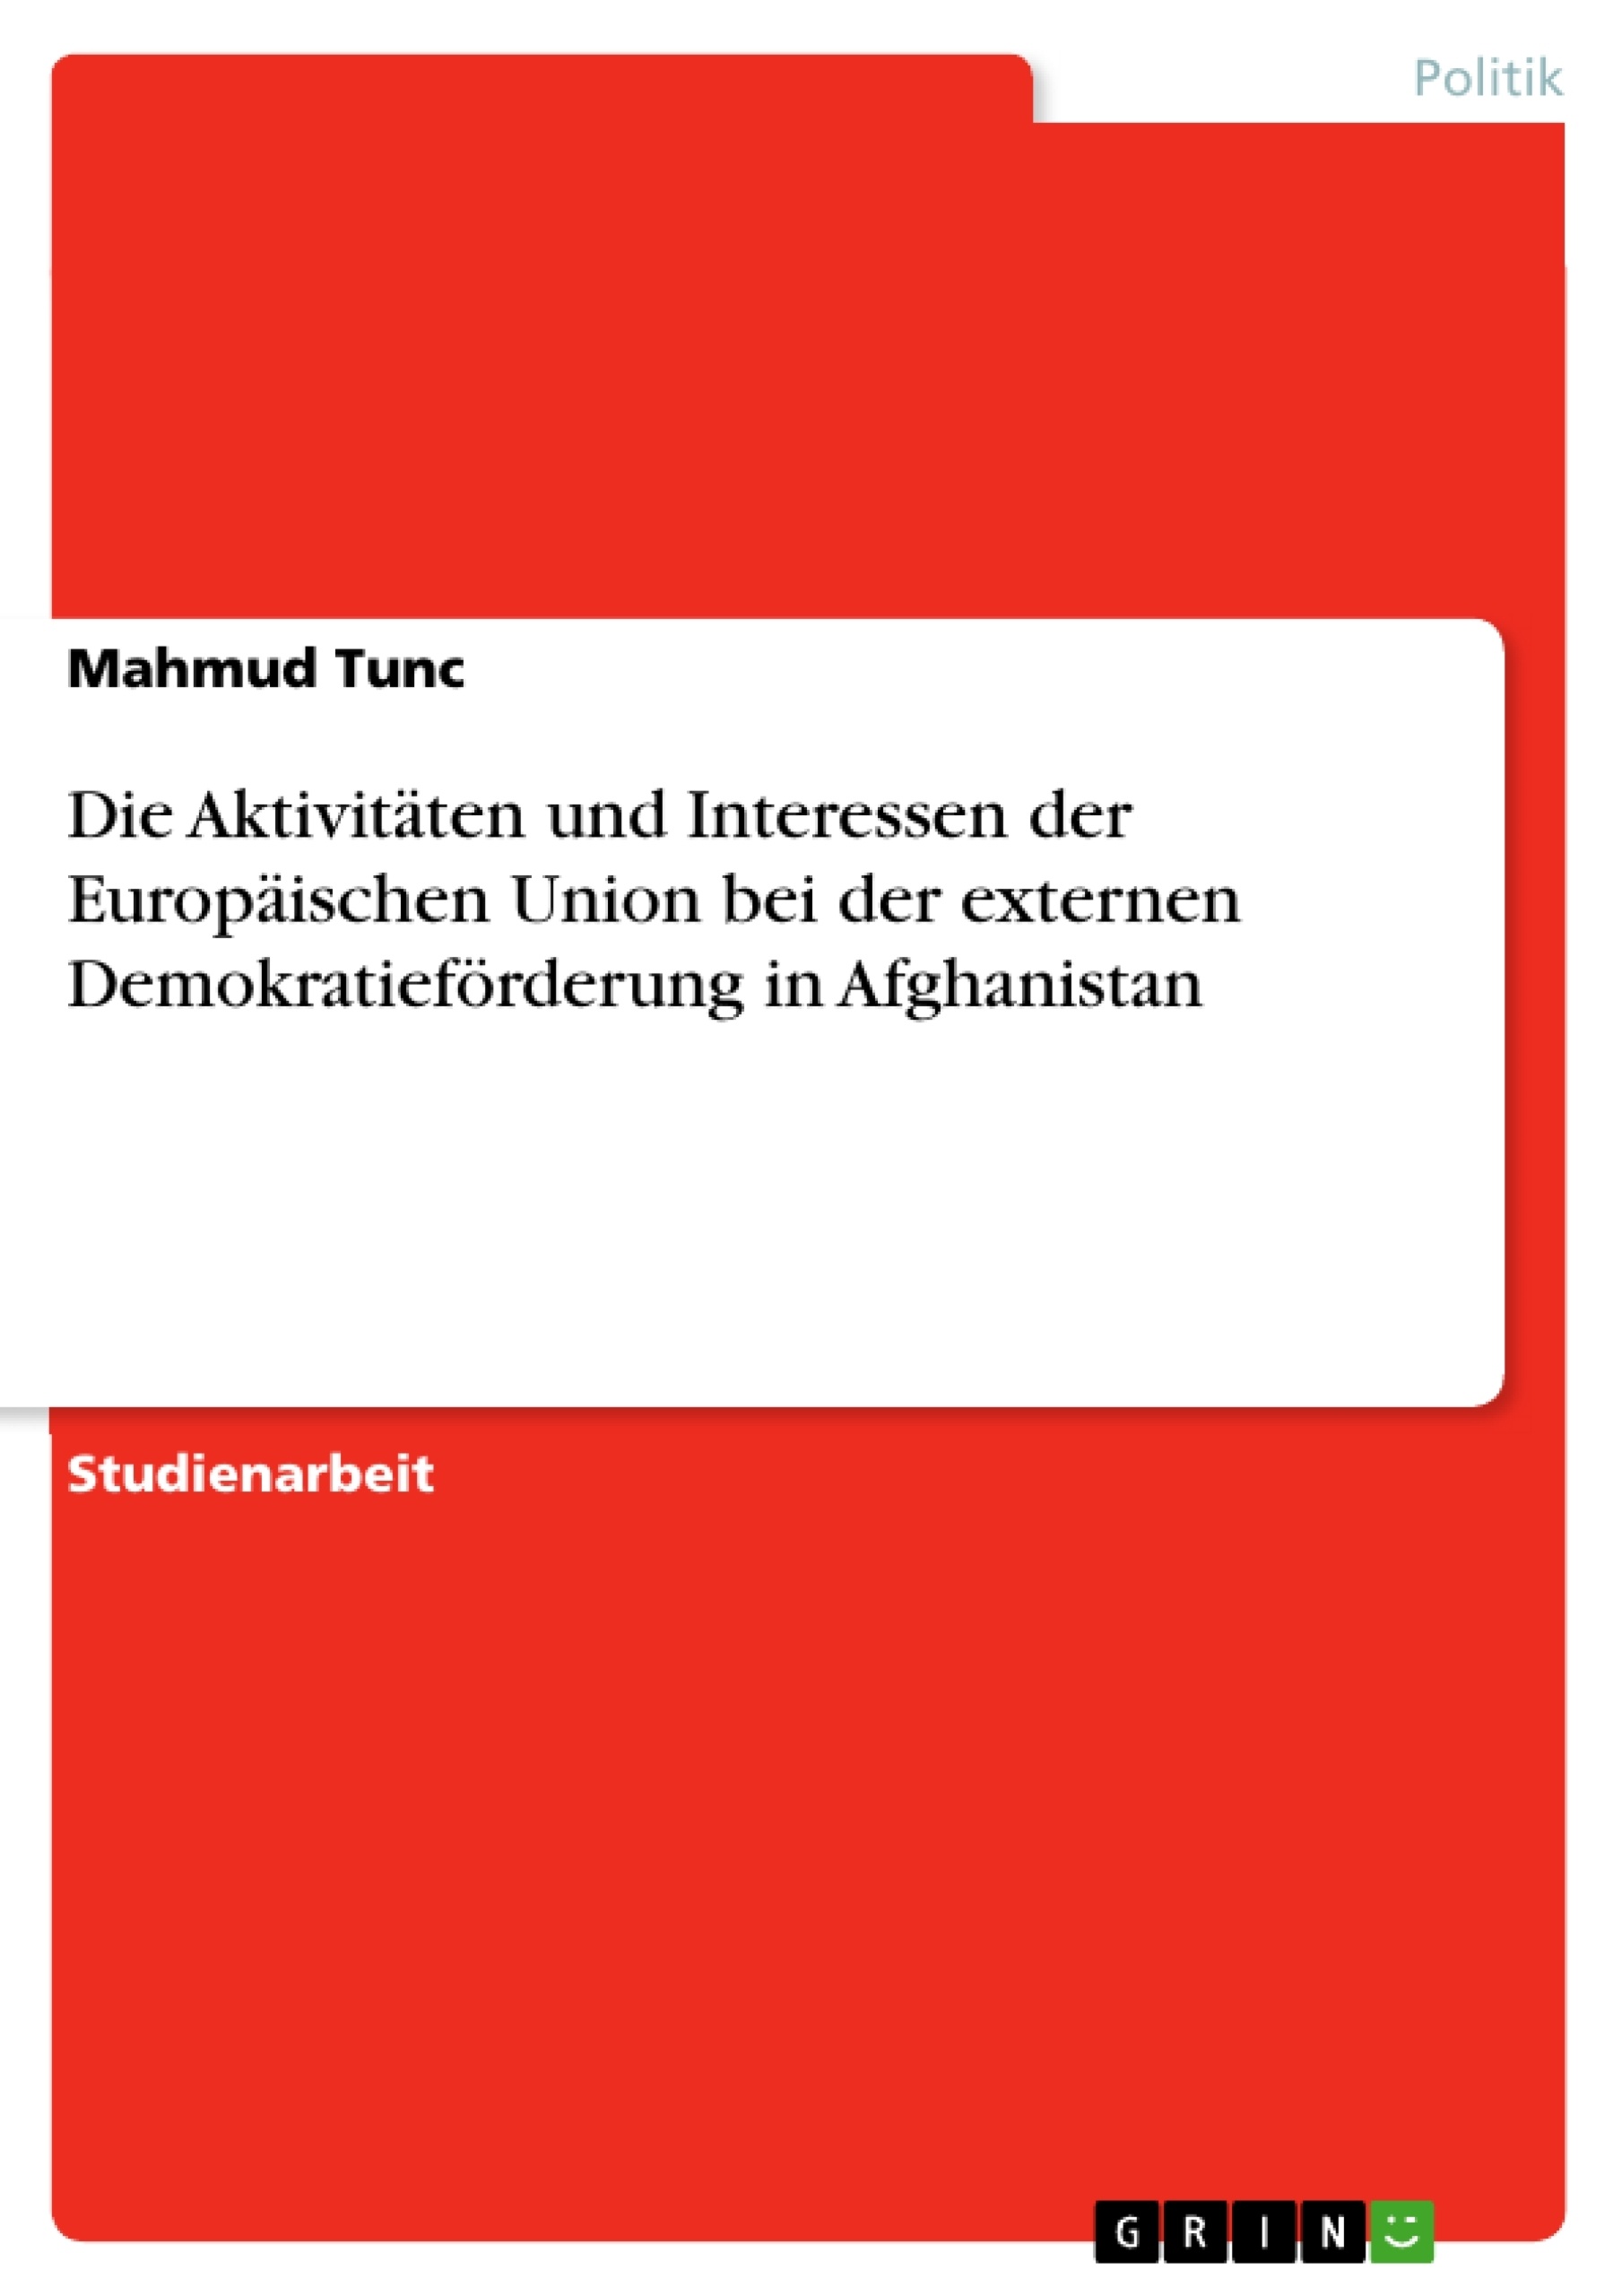 Título: Die Aktivitäten und Interessen der Europäischen Union bei der externen Demokratieförderung in Afghanistan